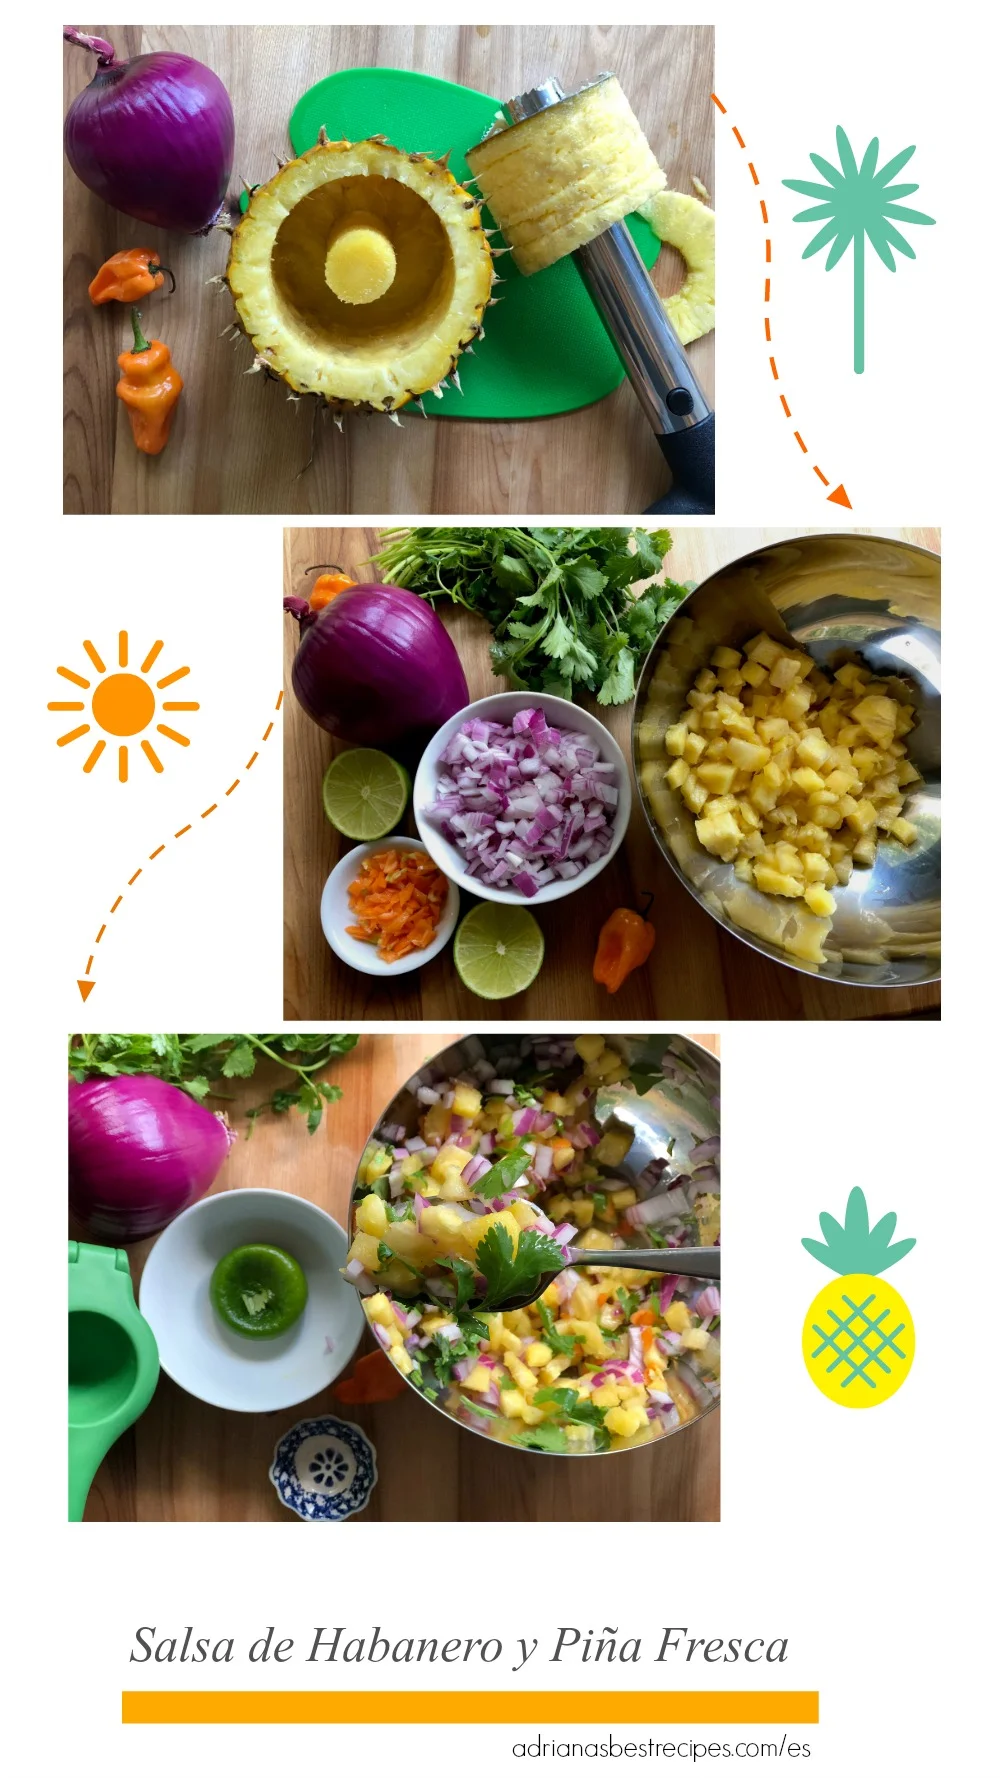 Salsa de Habanero y Piña Fresca - Adriana's Best Recipes